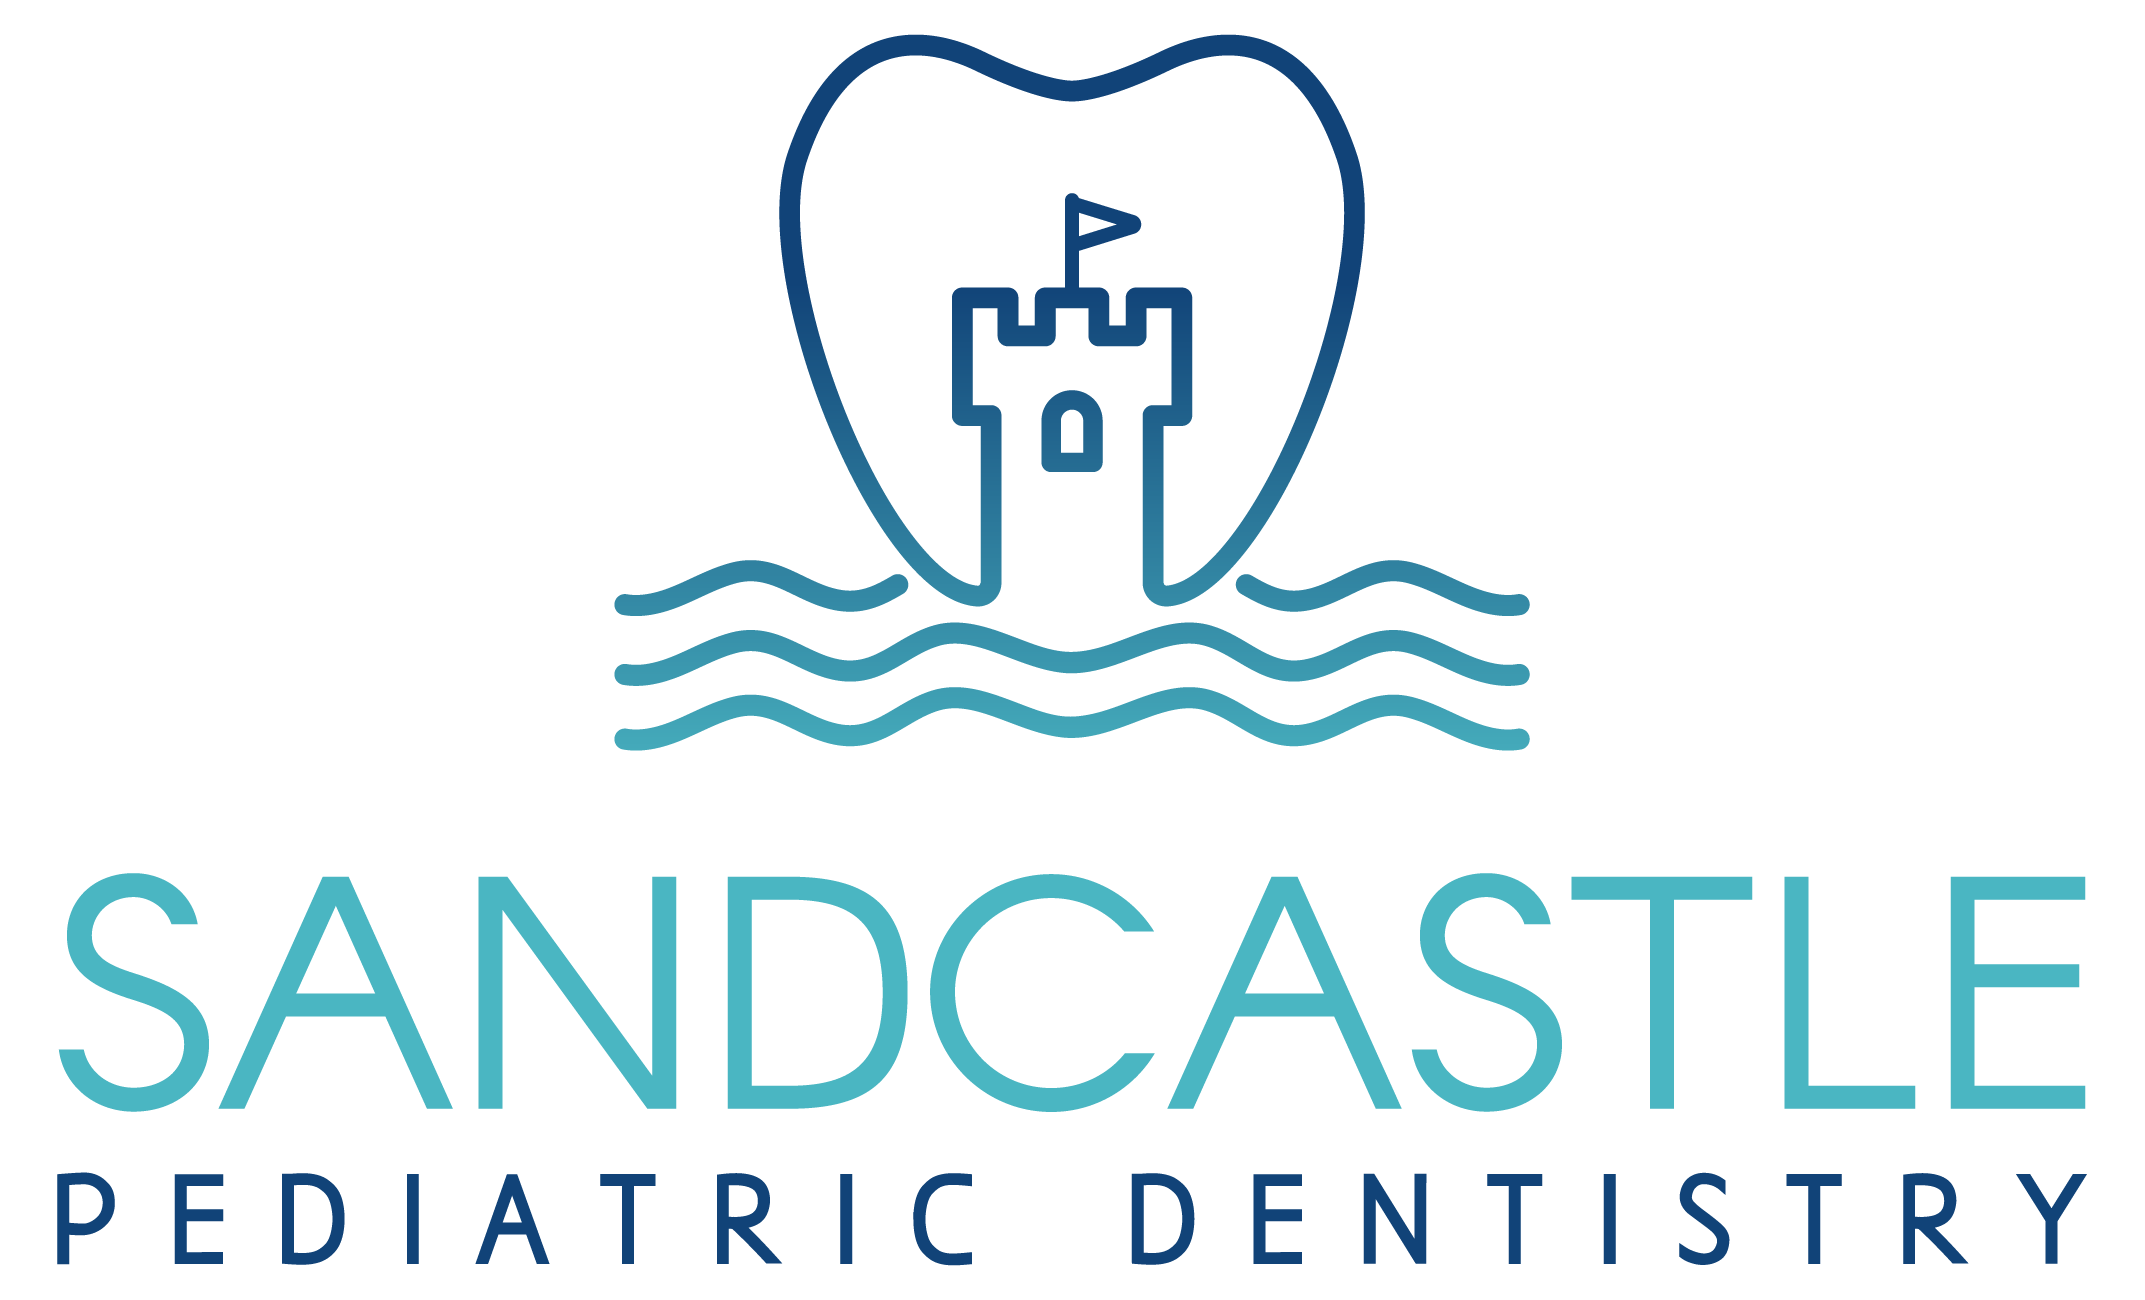 Sandcastle Pediatric Dentistry